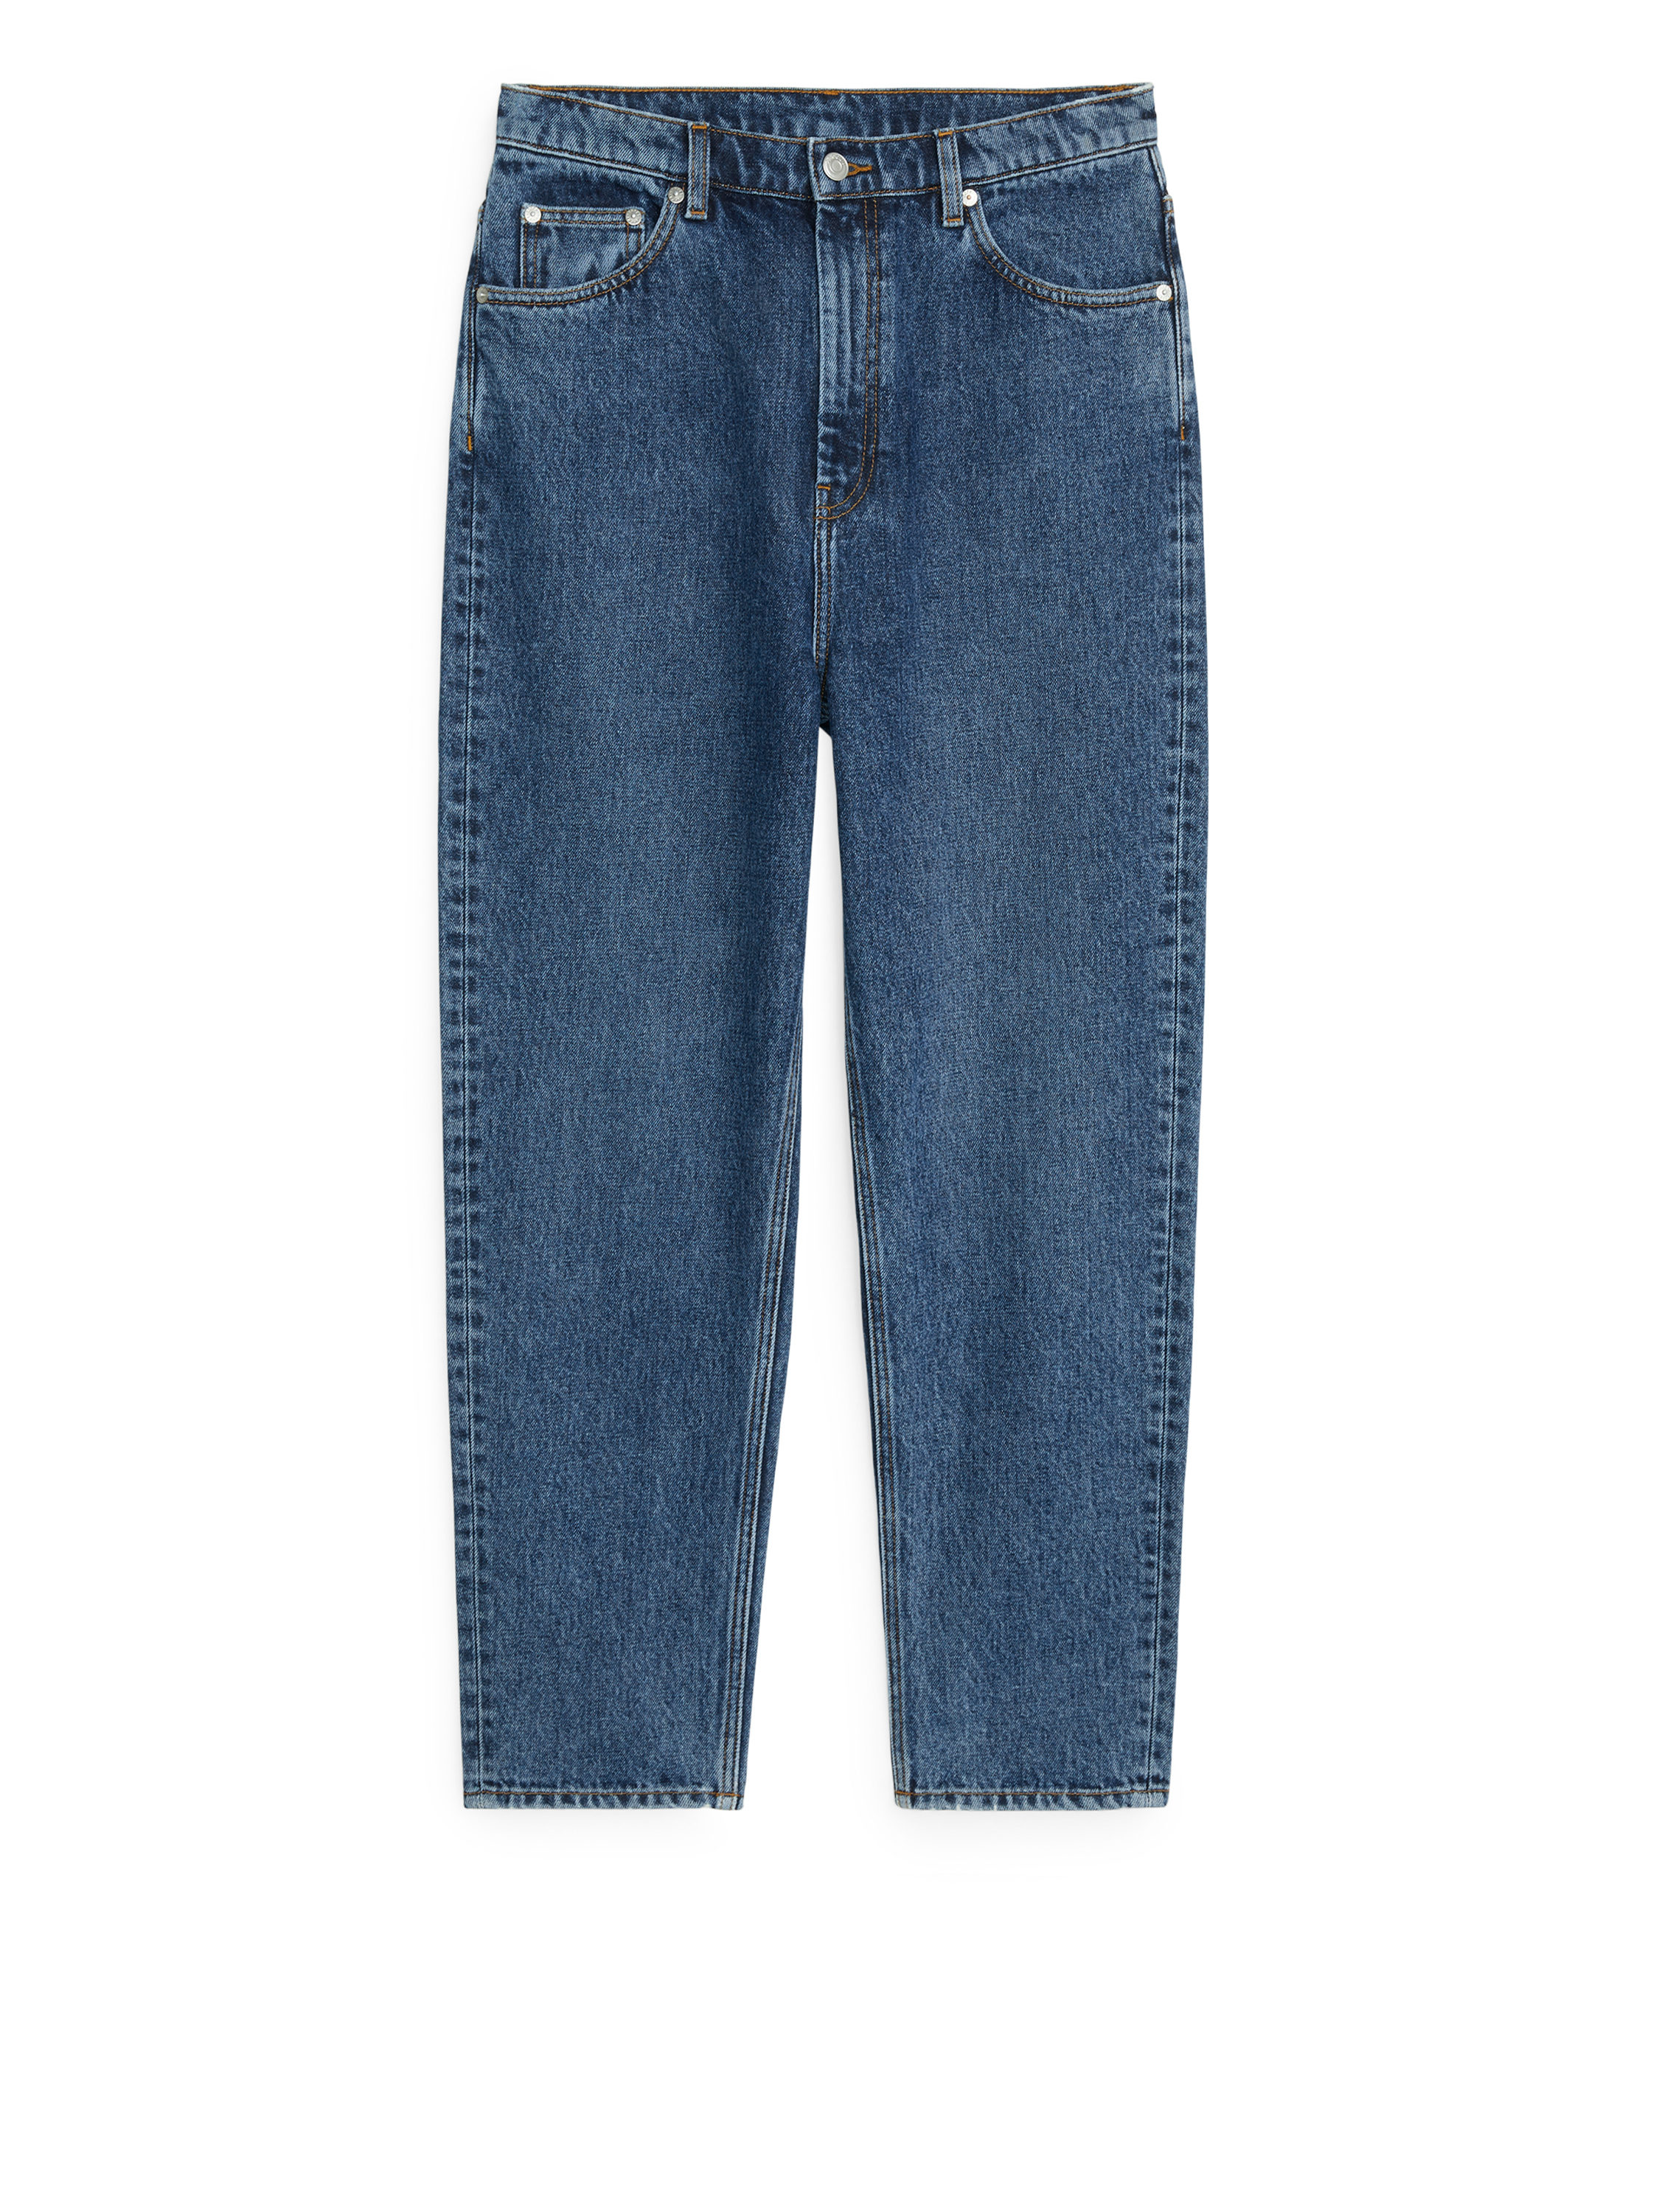 معتاد اعتراض فرح غير عملي الكالس  Tapered Cropped Jeans Medium Blue Blue 210 SEK | Afound